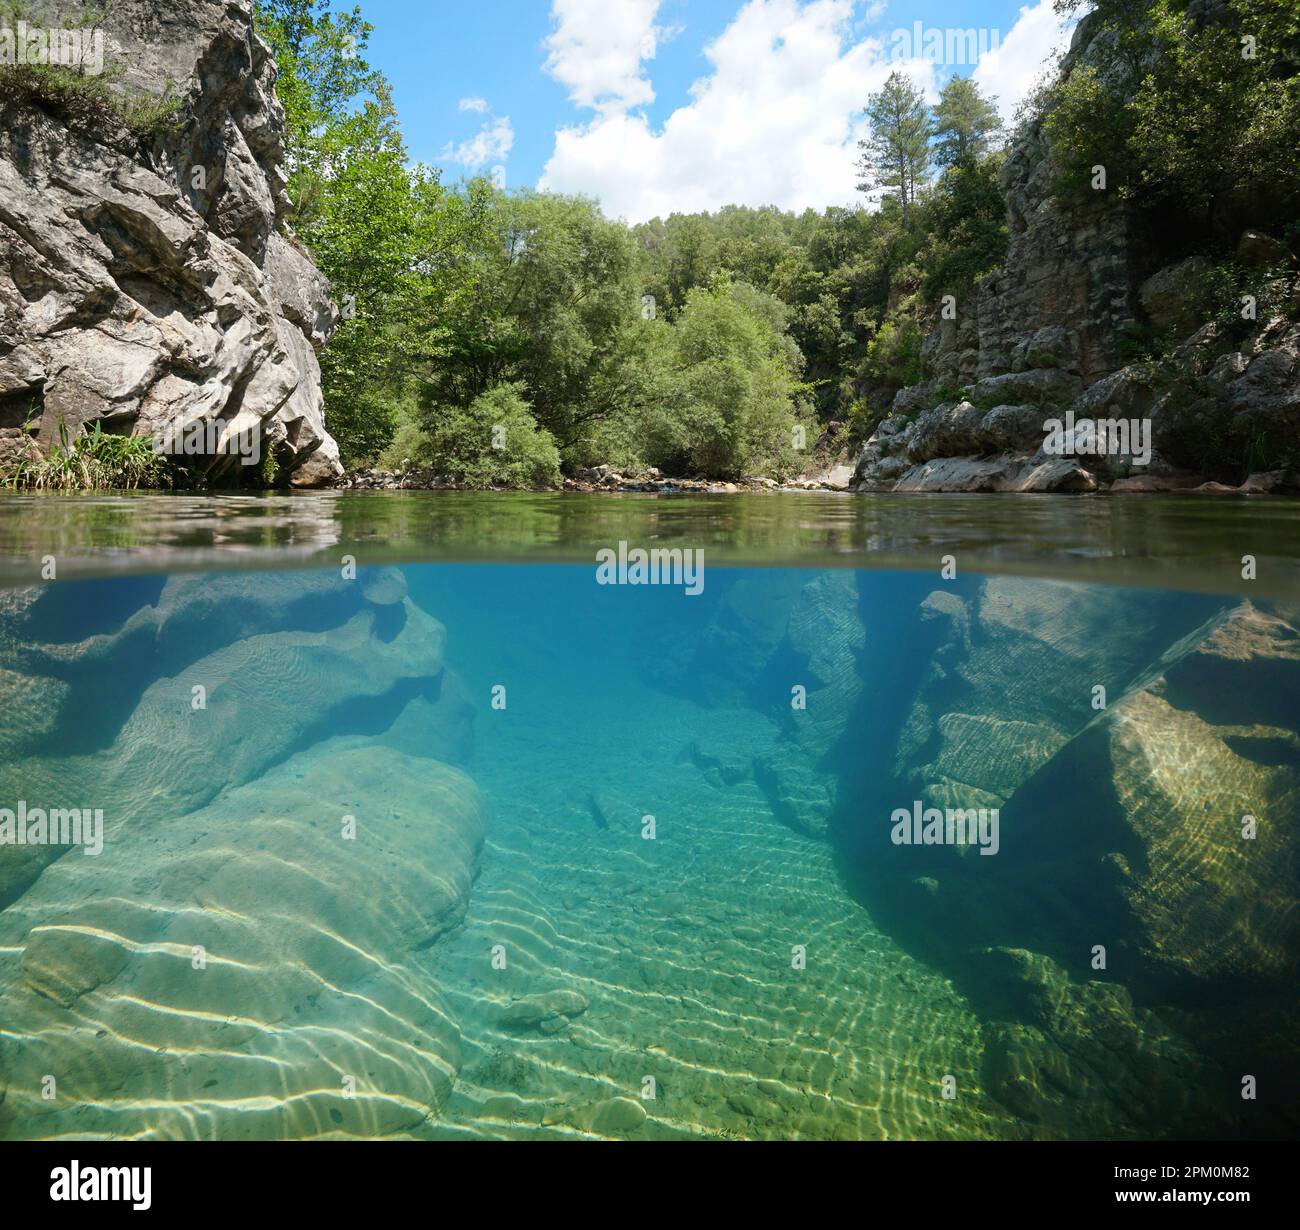 Fiume con riva rocciosa sopra e sotto la superficie dell'acqua, vista su due livelli, Spagna, Catalogna Foto Stock